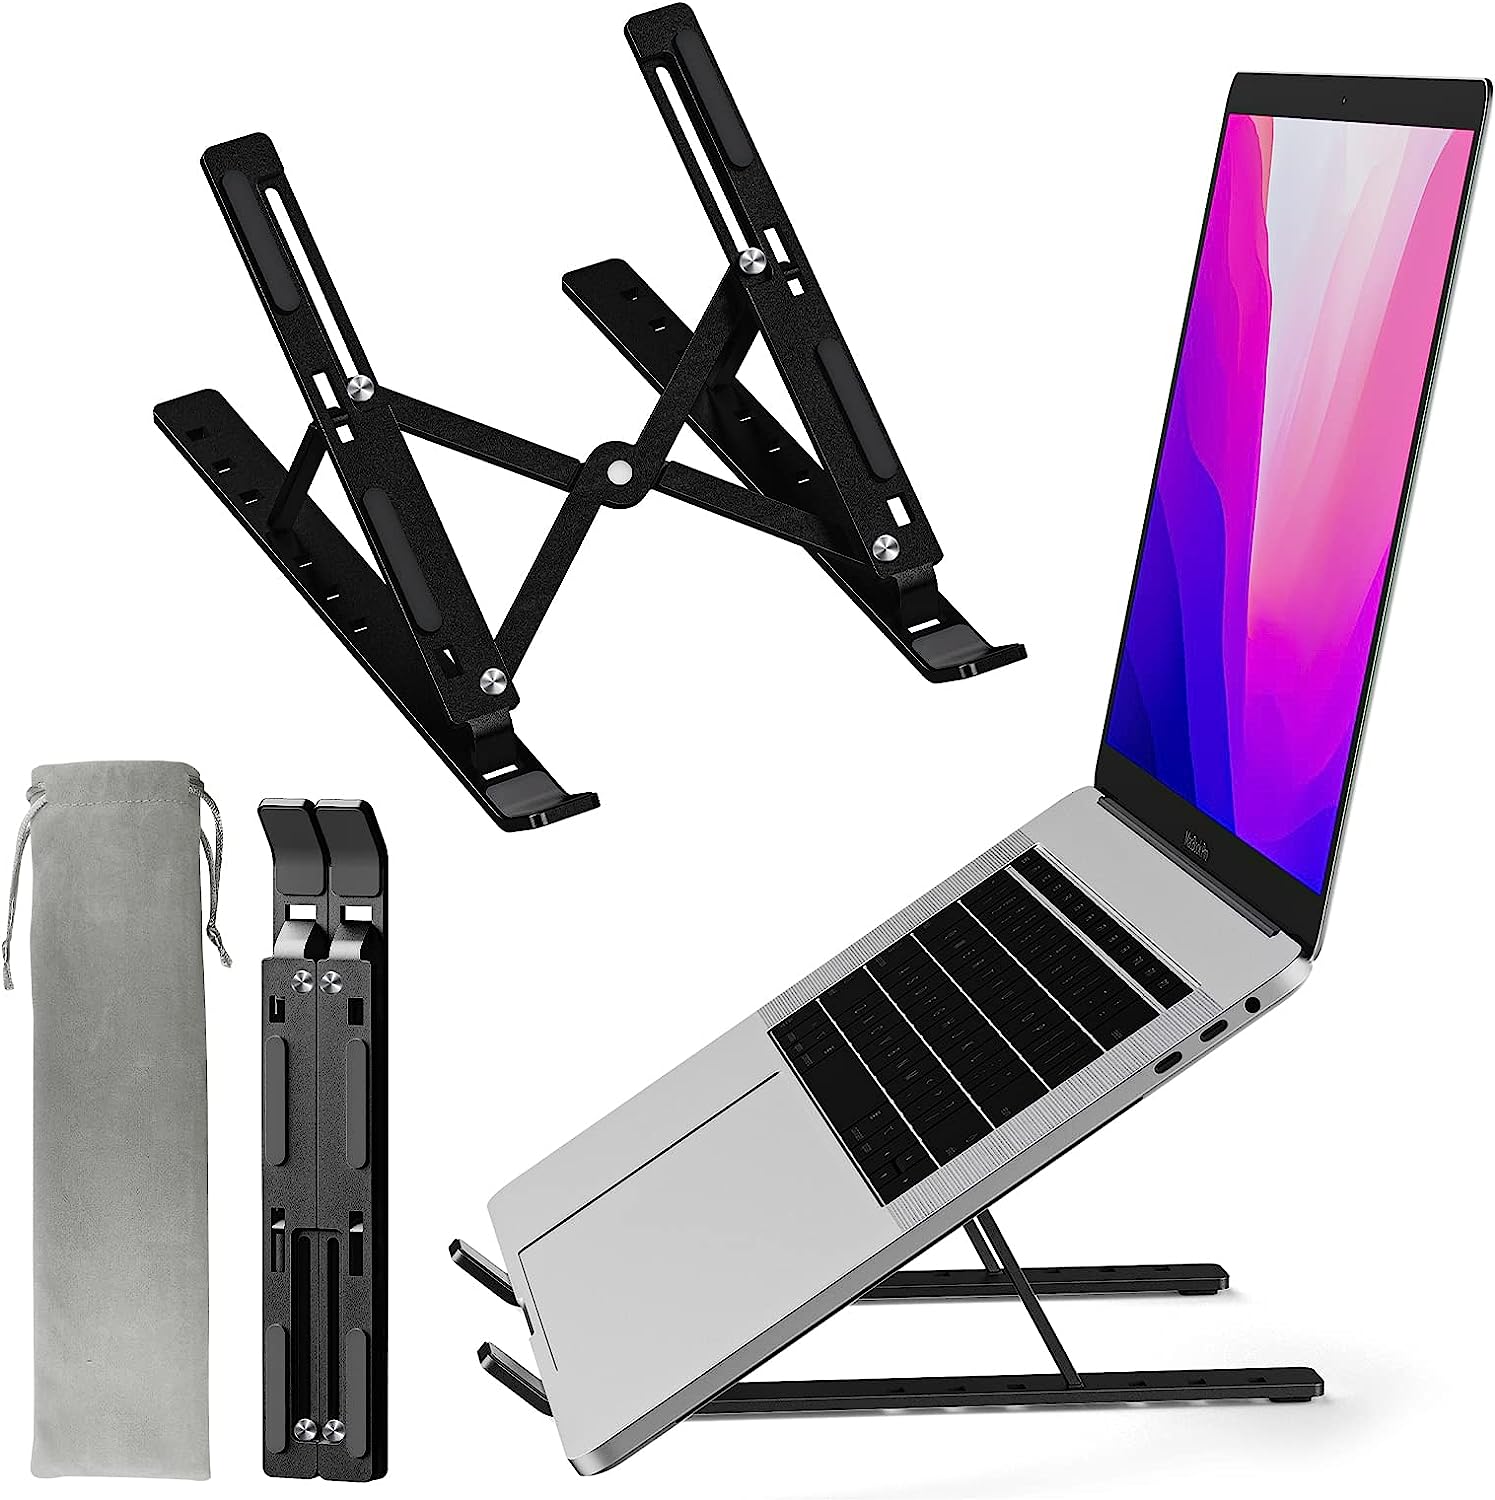 avakot Laptop Stand for Desk Adjustable Ergonomic Foldable Aluminum Laptop Holder (Black)